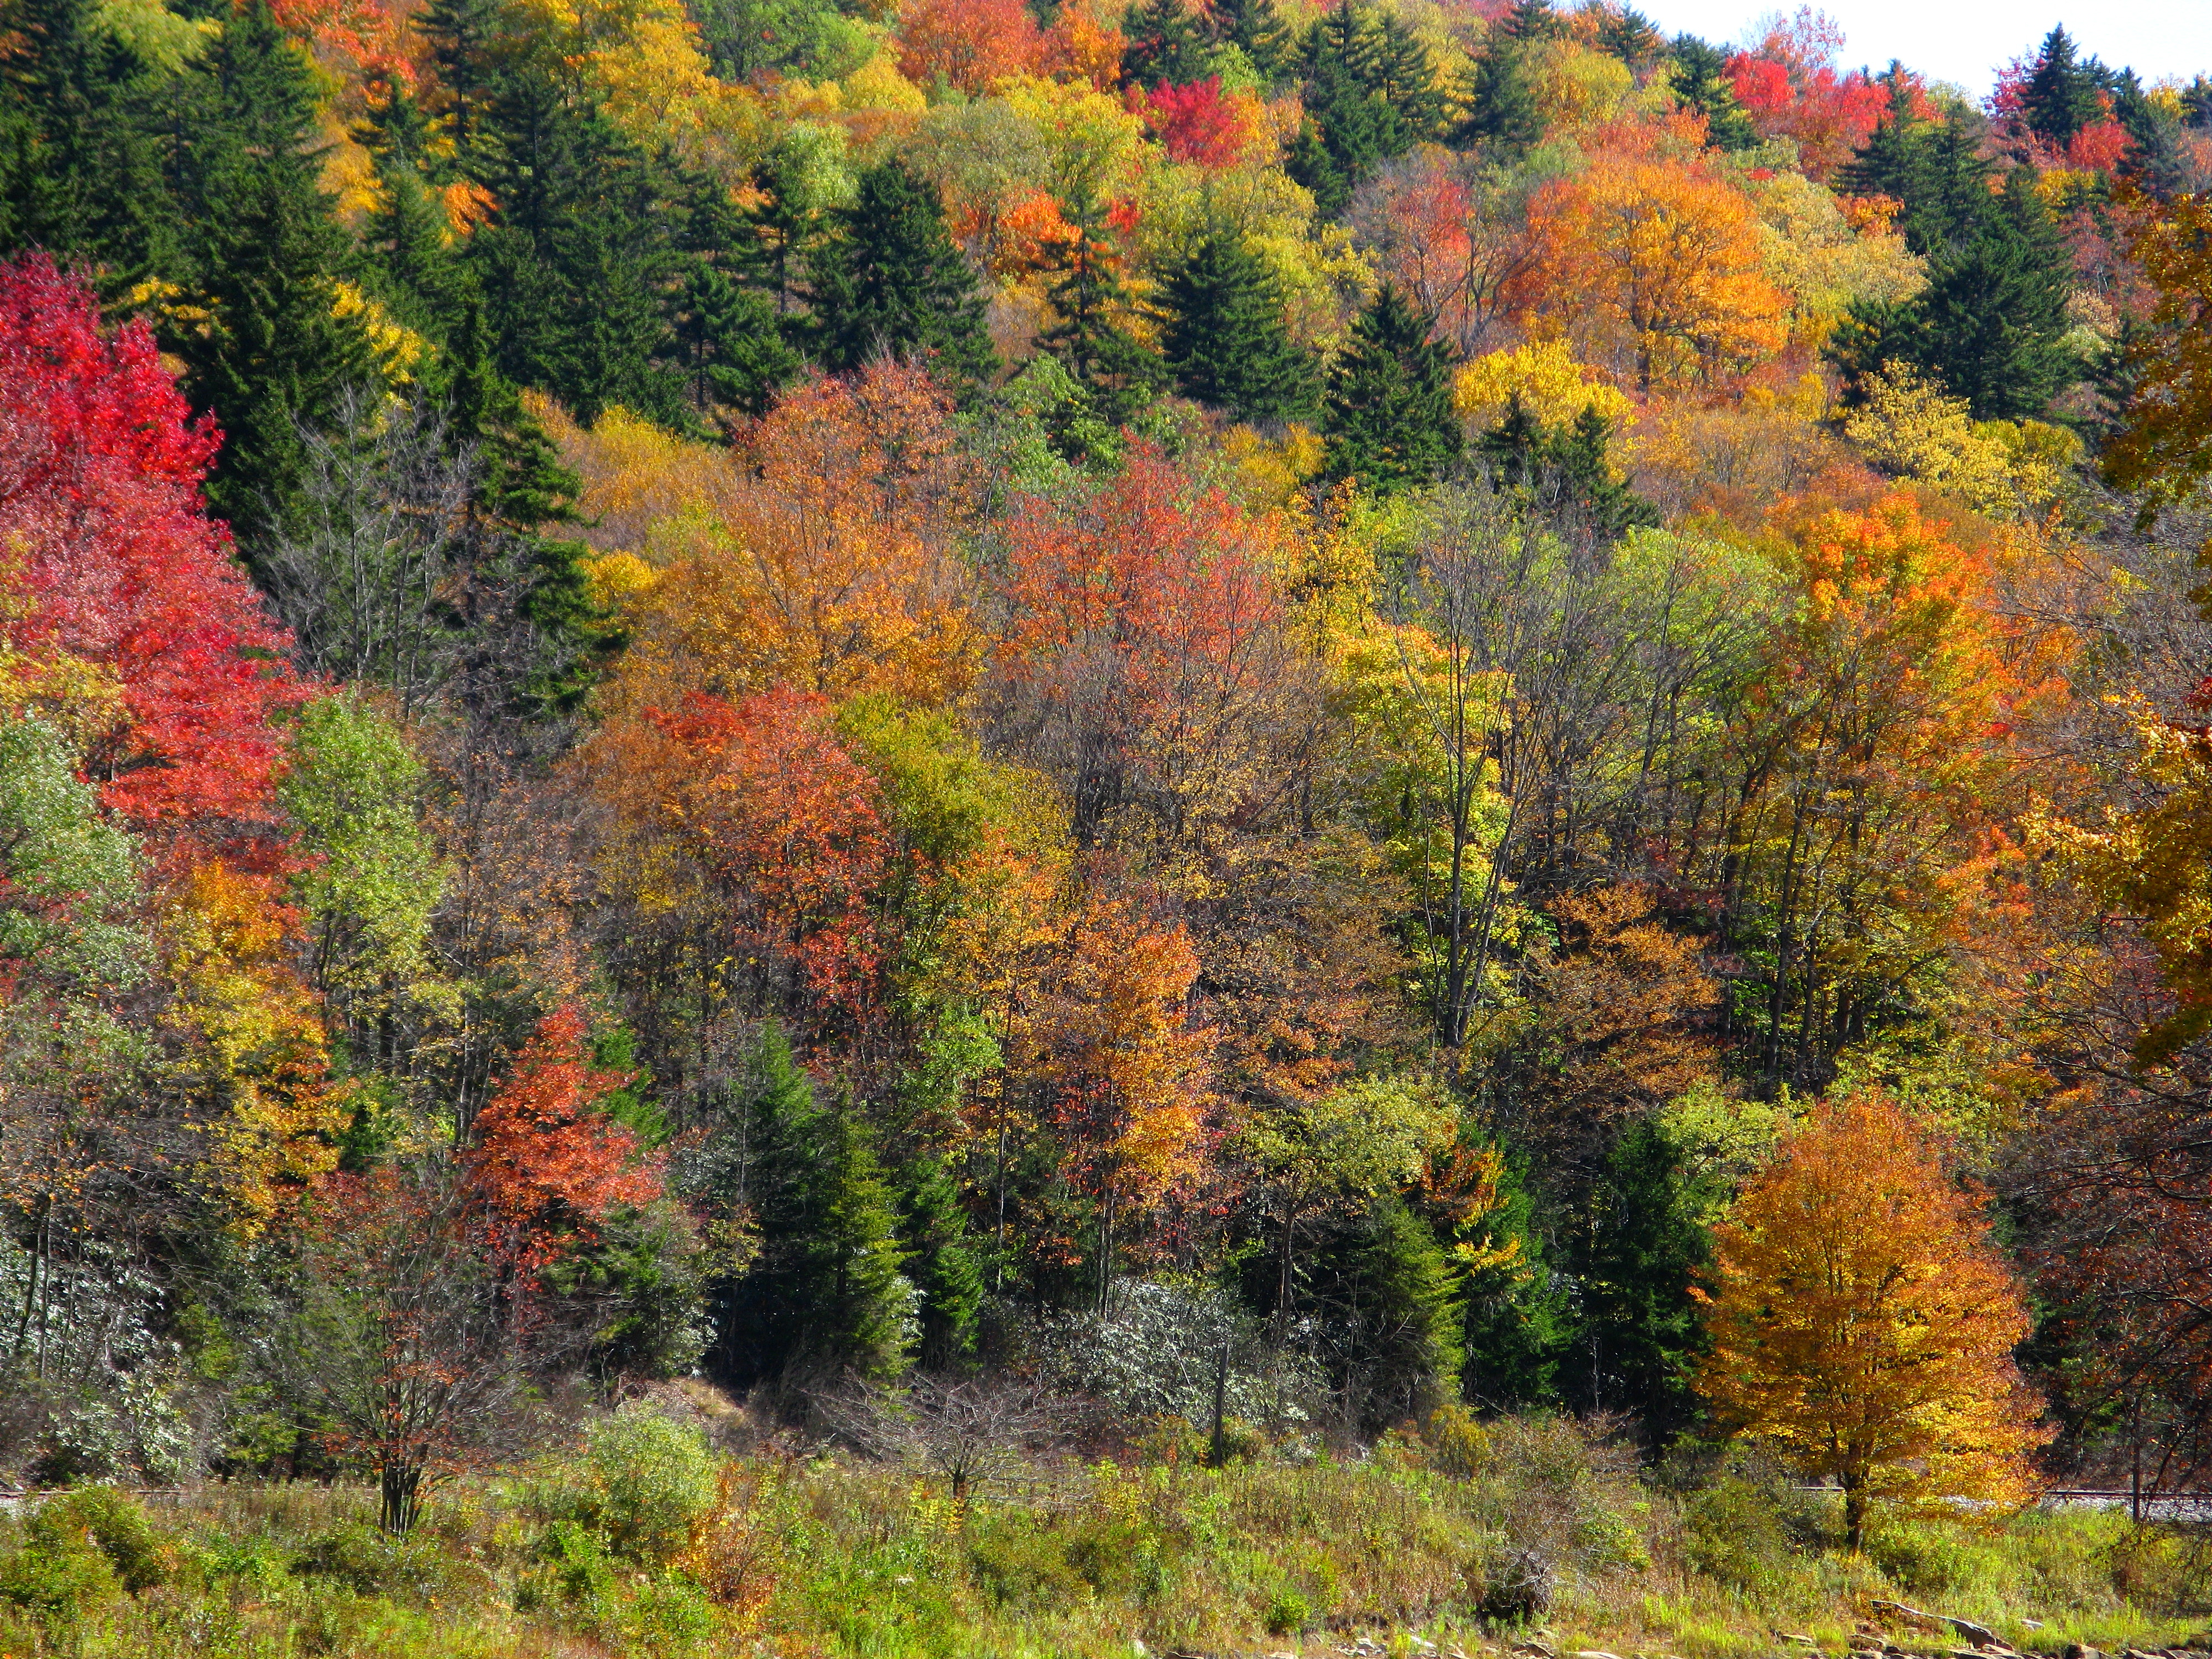 Shavers-fork-fall-foliage - West Virginia - ForestWander